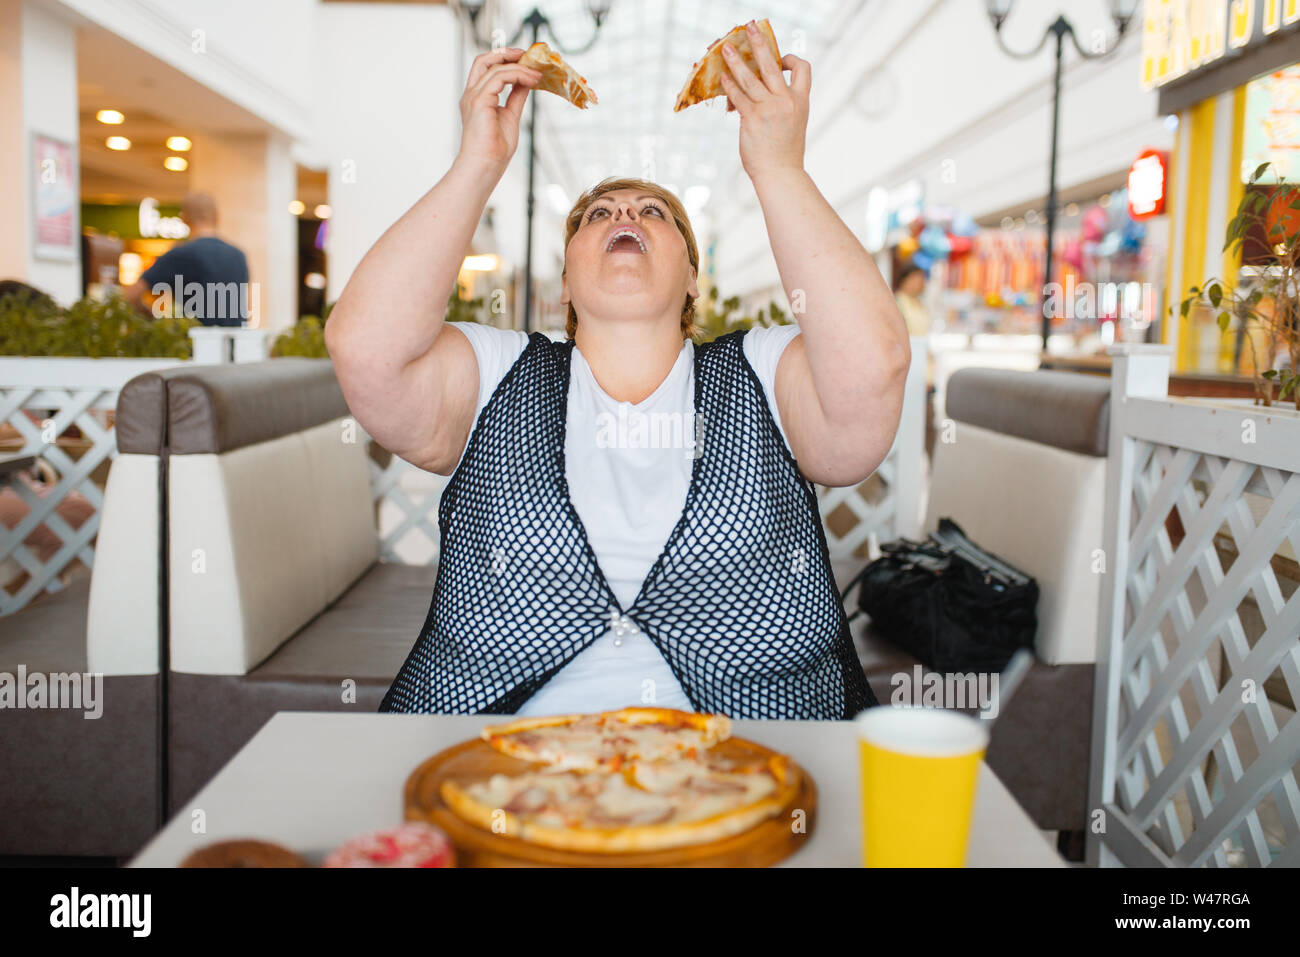 maddy_b passe Générale (1) Acides-woman-eating-pizza-a-mall-restaurant-aliments-malsains-l-exces-de-personne-de-bobba-feminin-a-la-table-avec-l-ordure-diner-probleme-d-obesite-w47rga